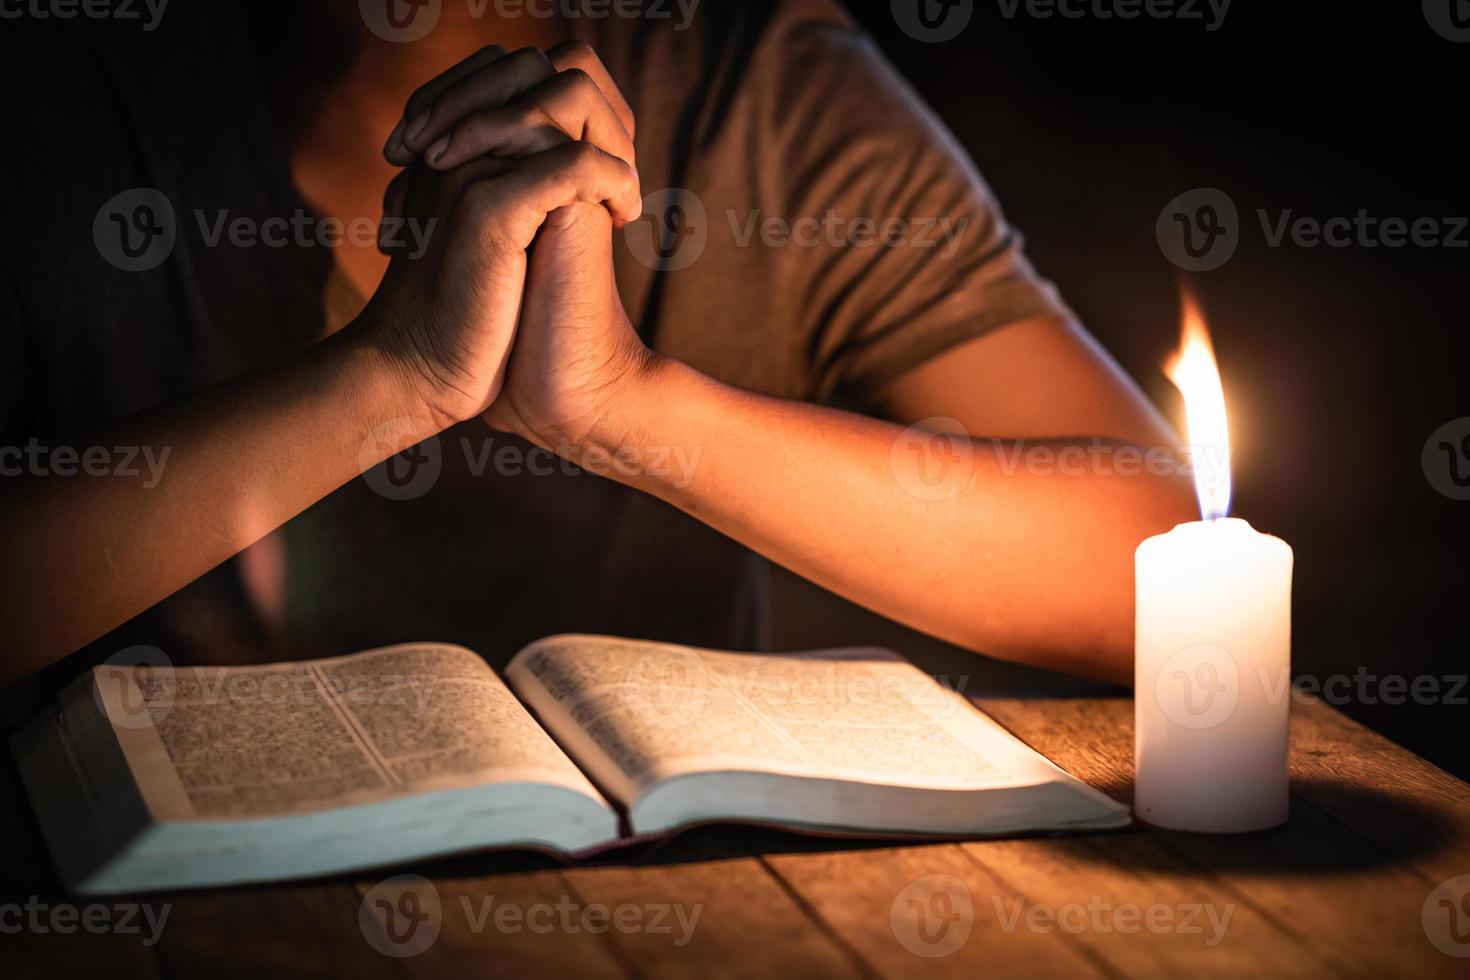 religiösen Vorstellungen betete der junge Mann auf der Bibel im Raum und zündete die Kerzen zum Anzünden an. foto